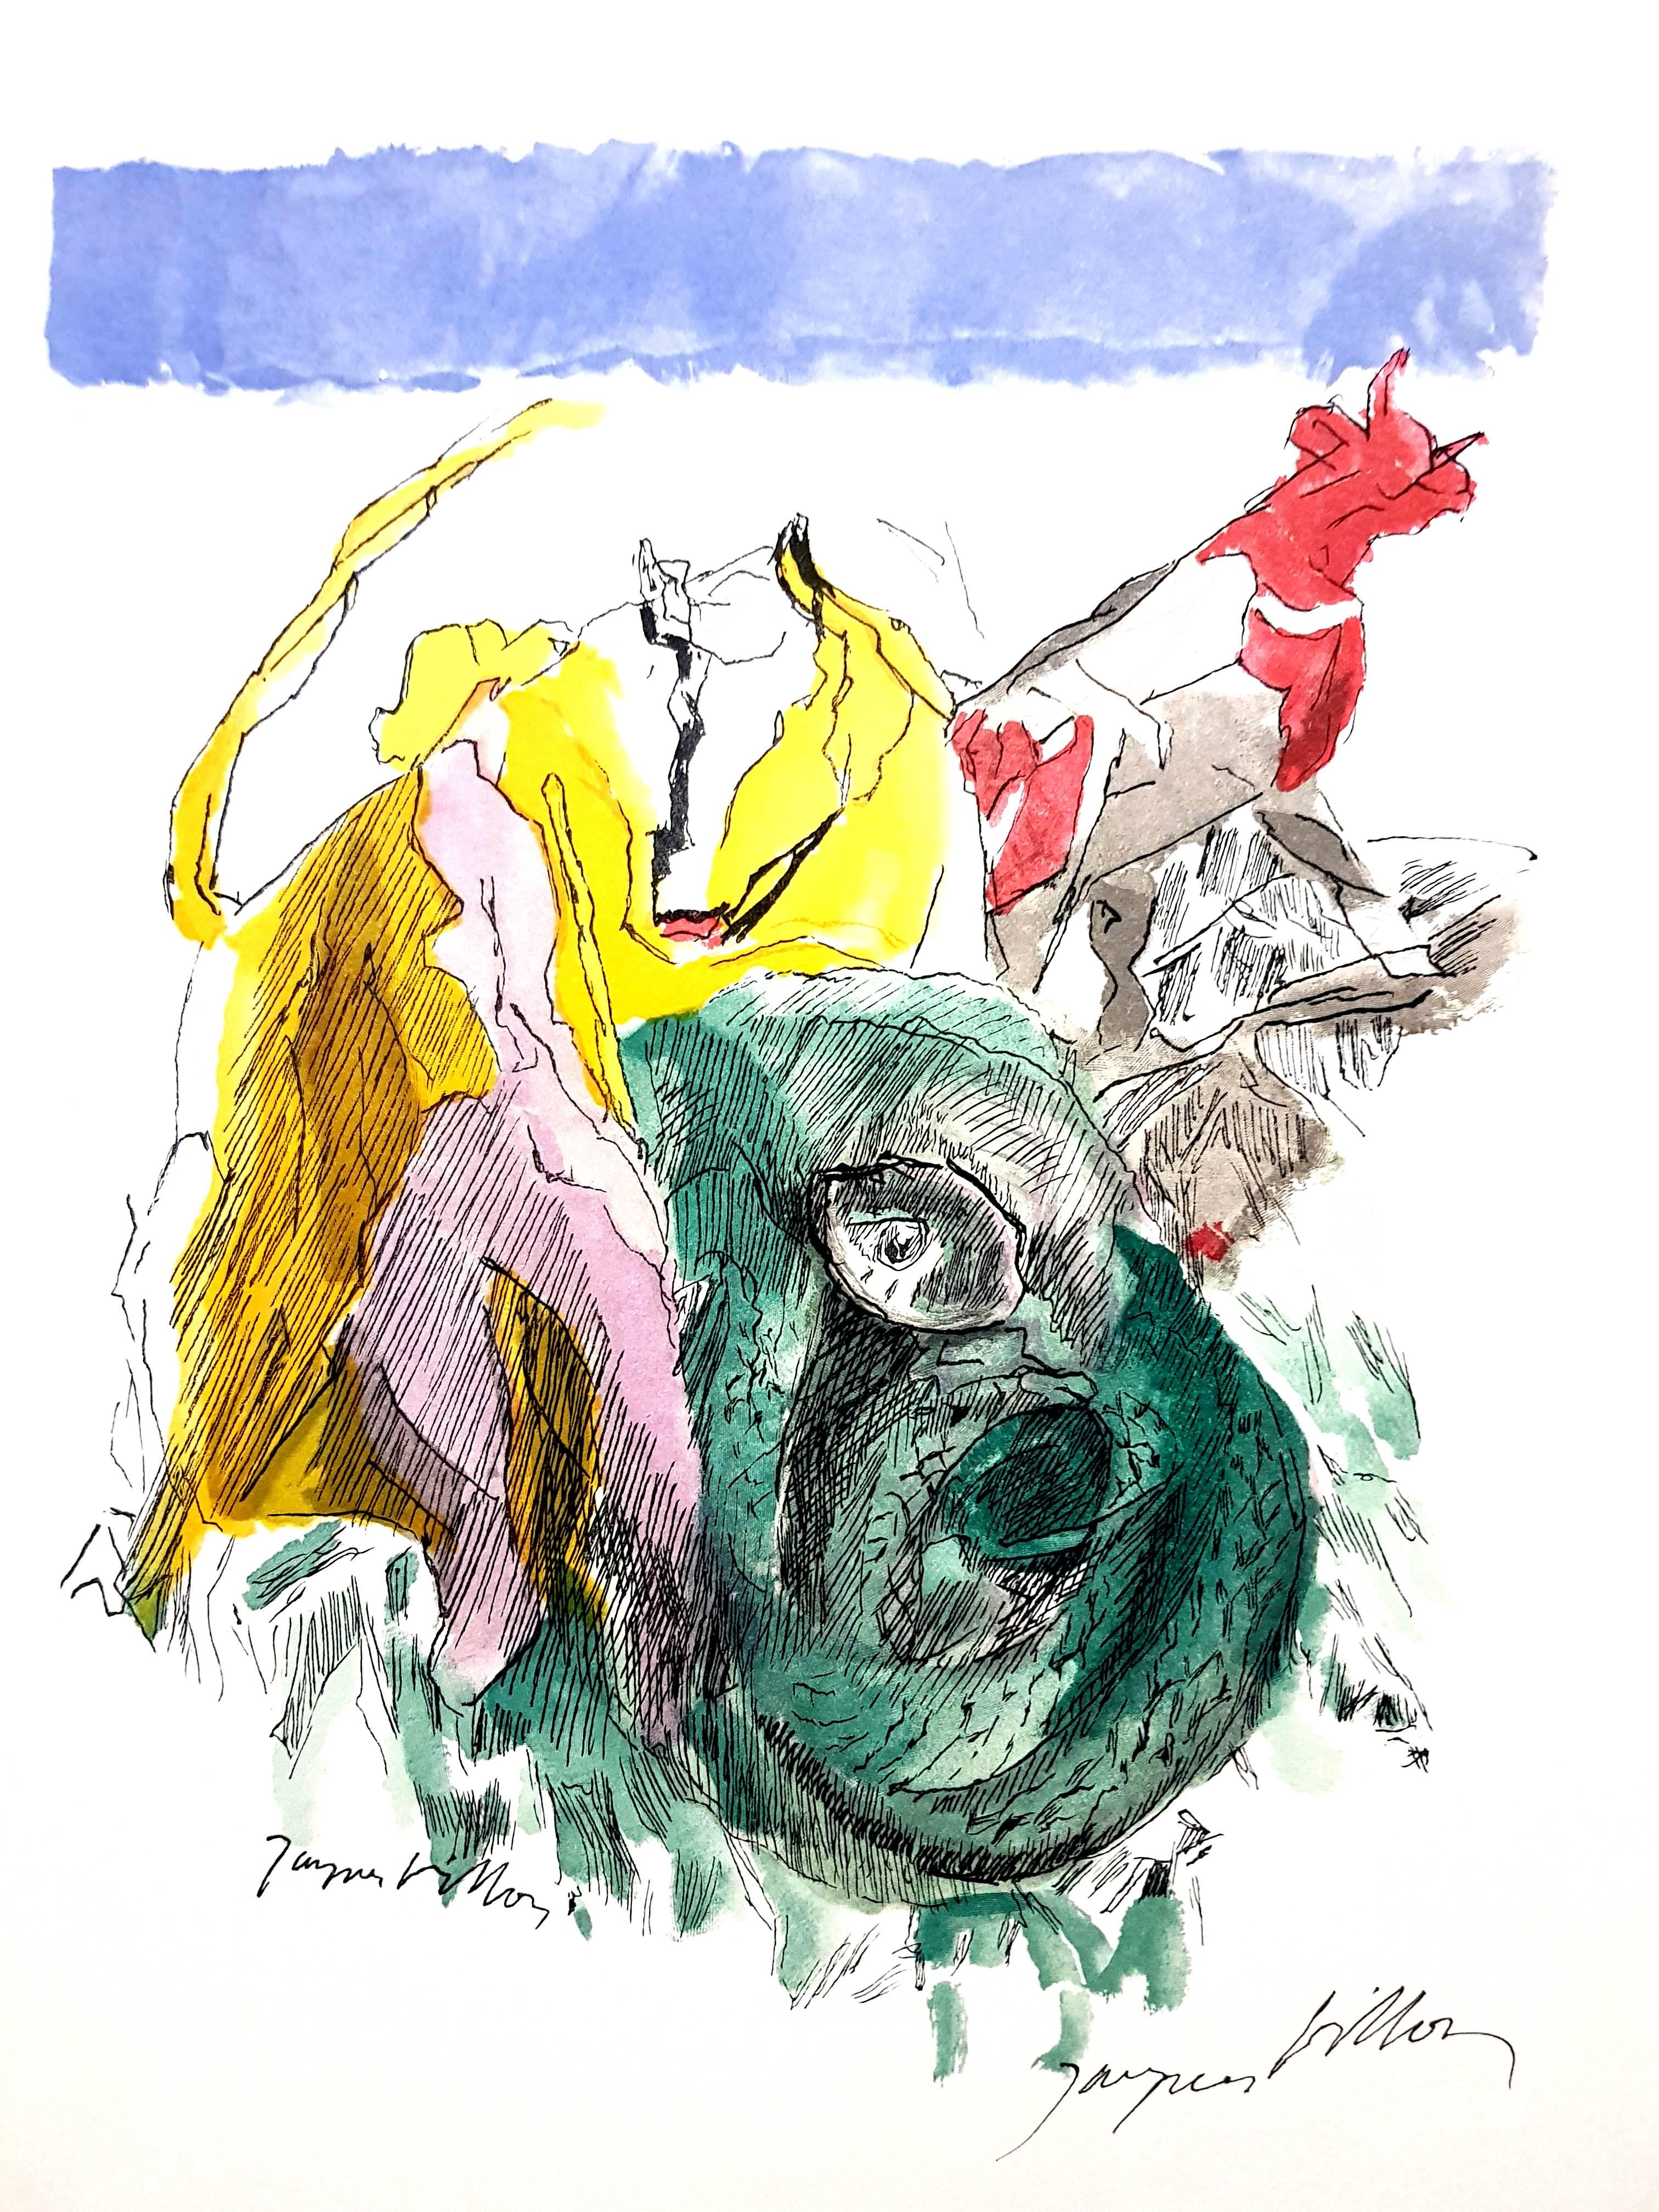 Jacques Villon - Colorful Spirit - Handsigned Original Lithograph